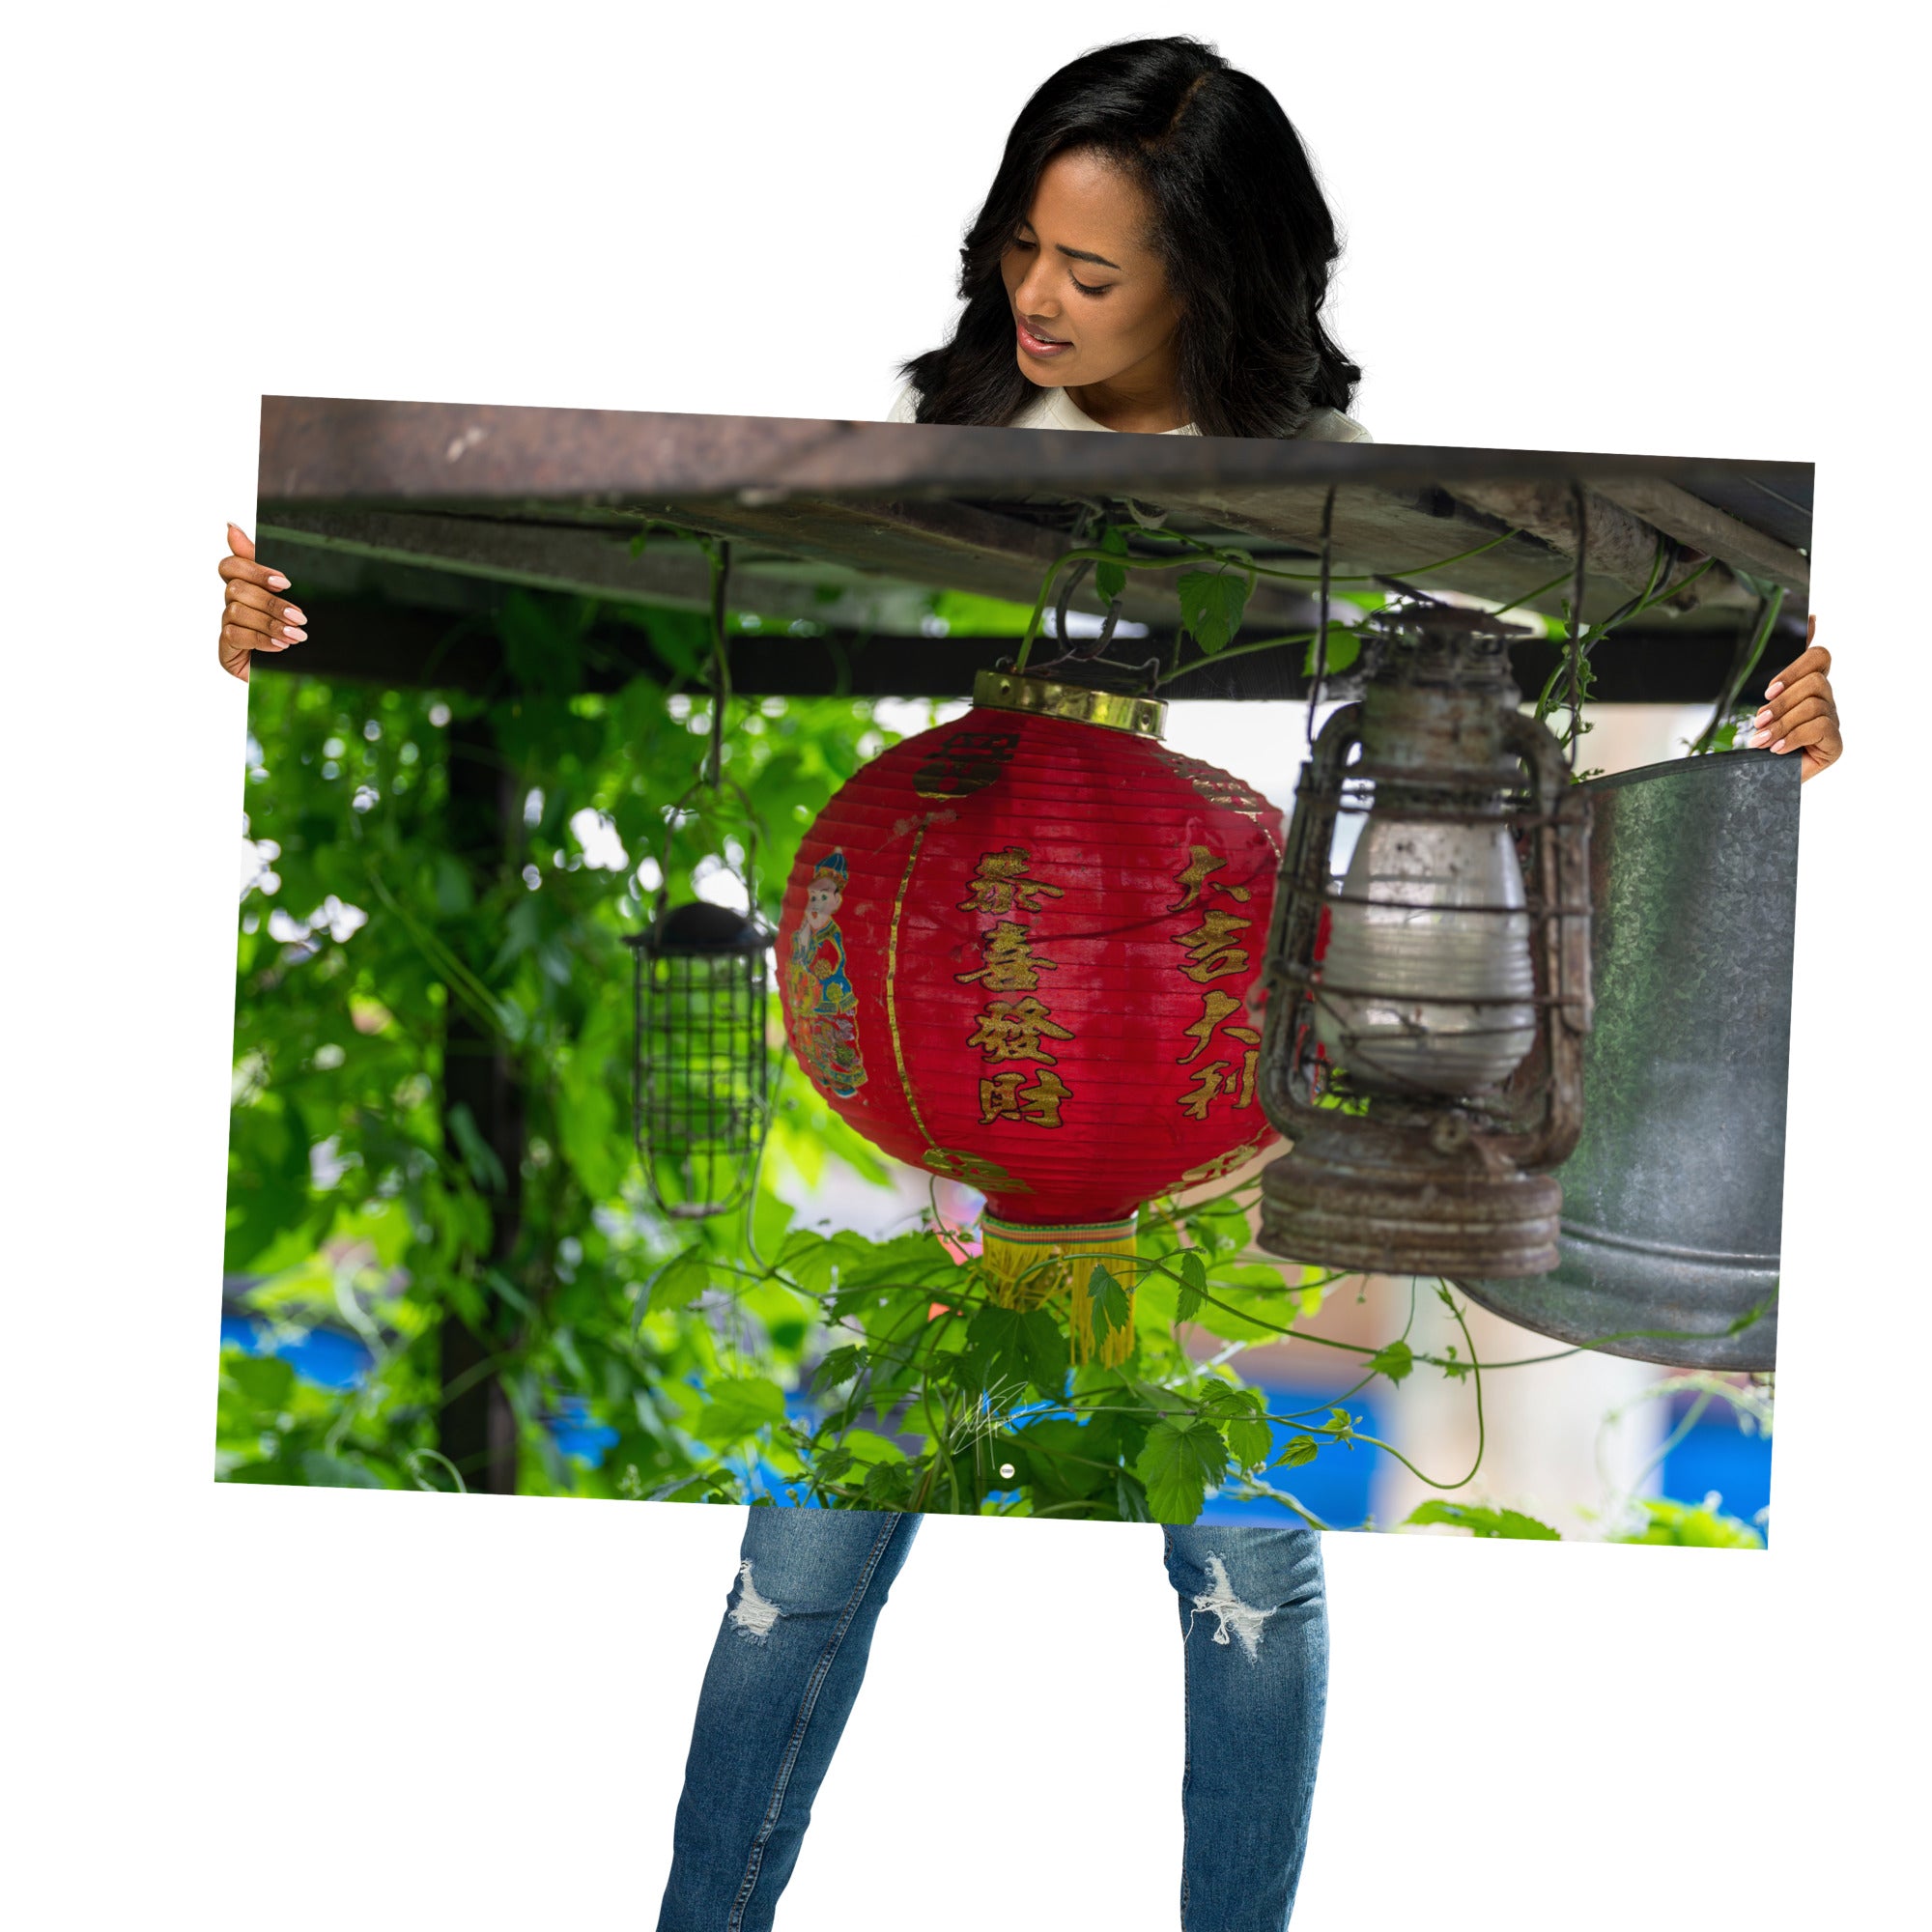 Poster du 'Lanterne Asiatique', une photographie capturant une lanterne suspendue entourée de plantes vertes, symbolisant l'harmonie et la quiétude.